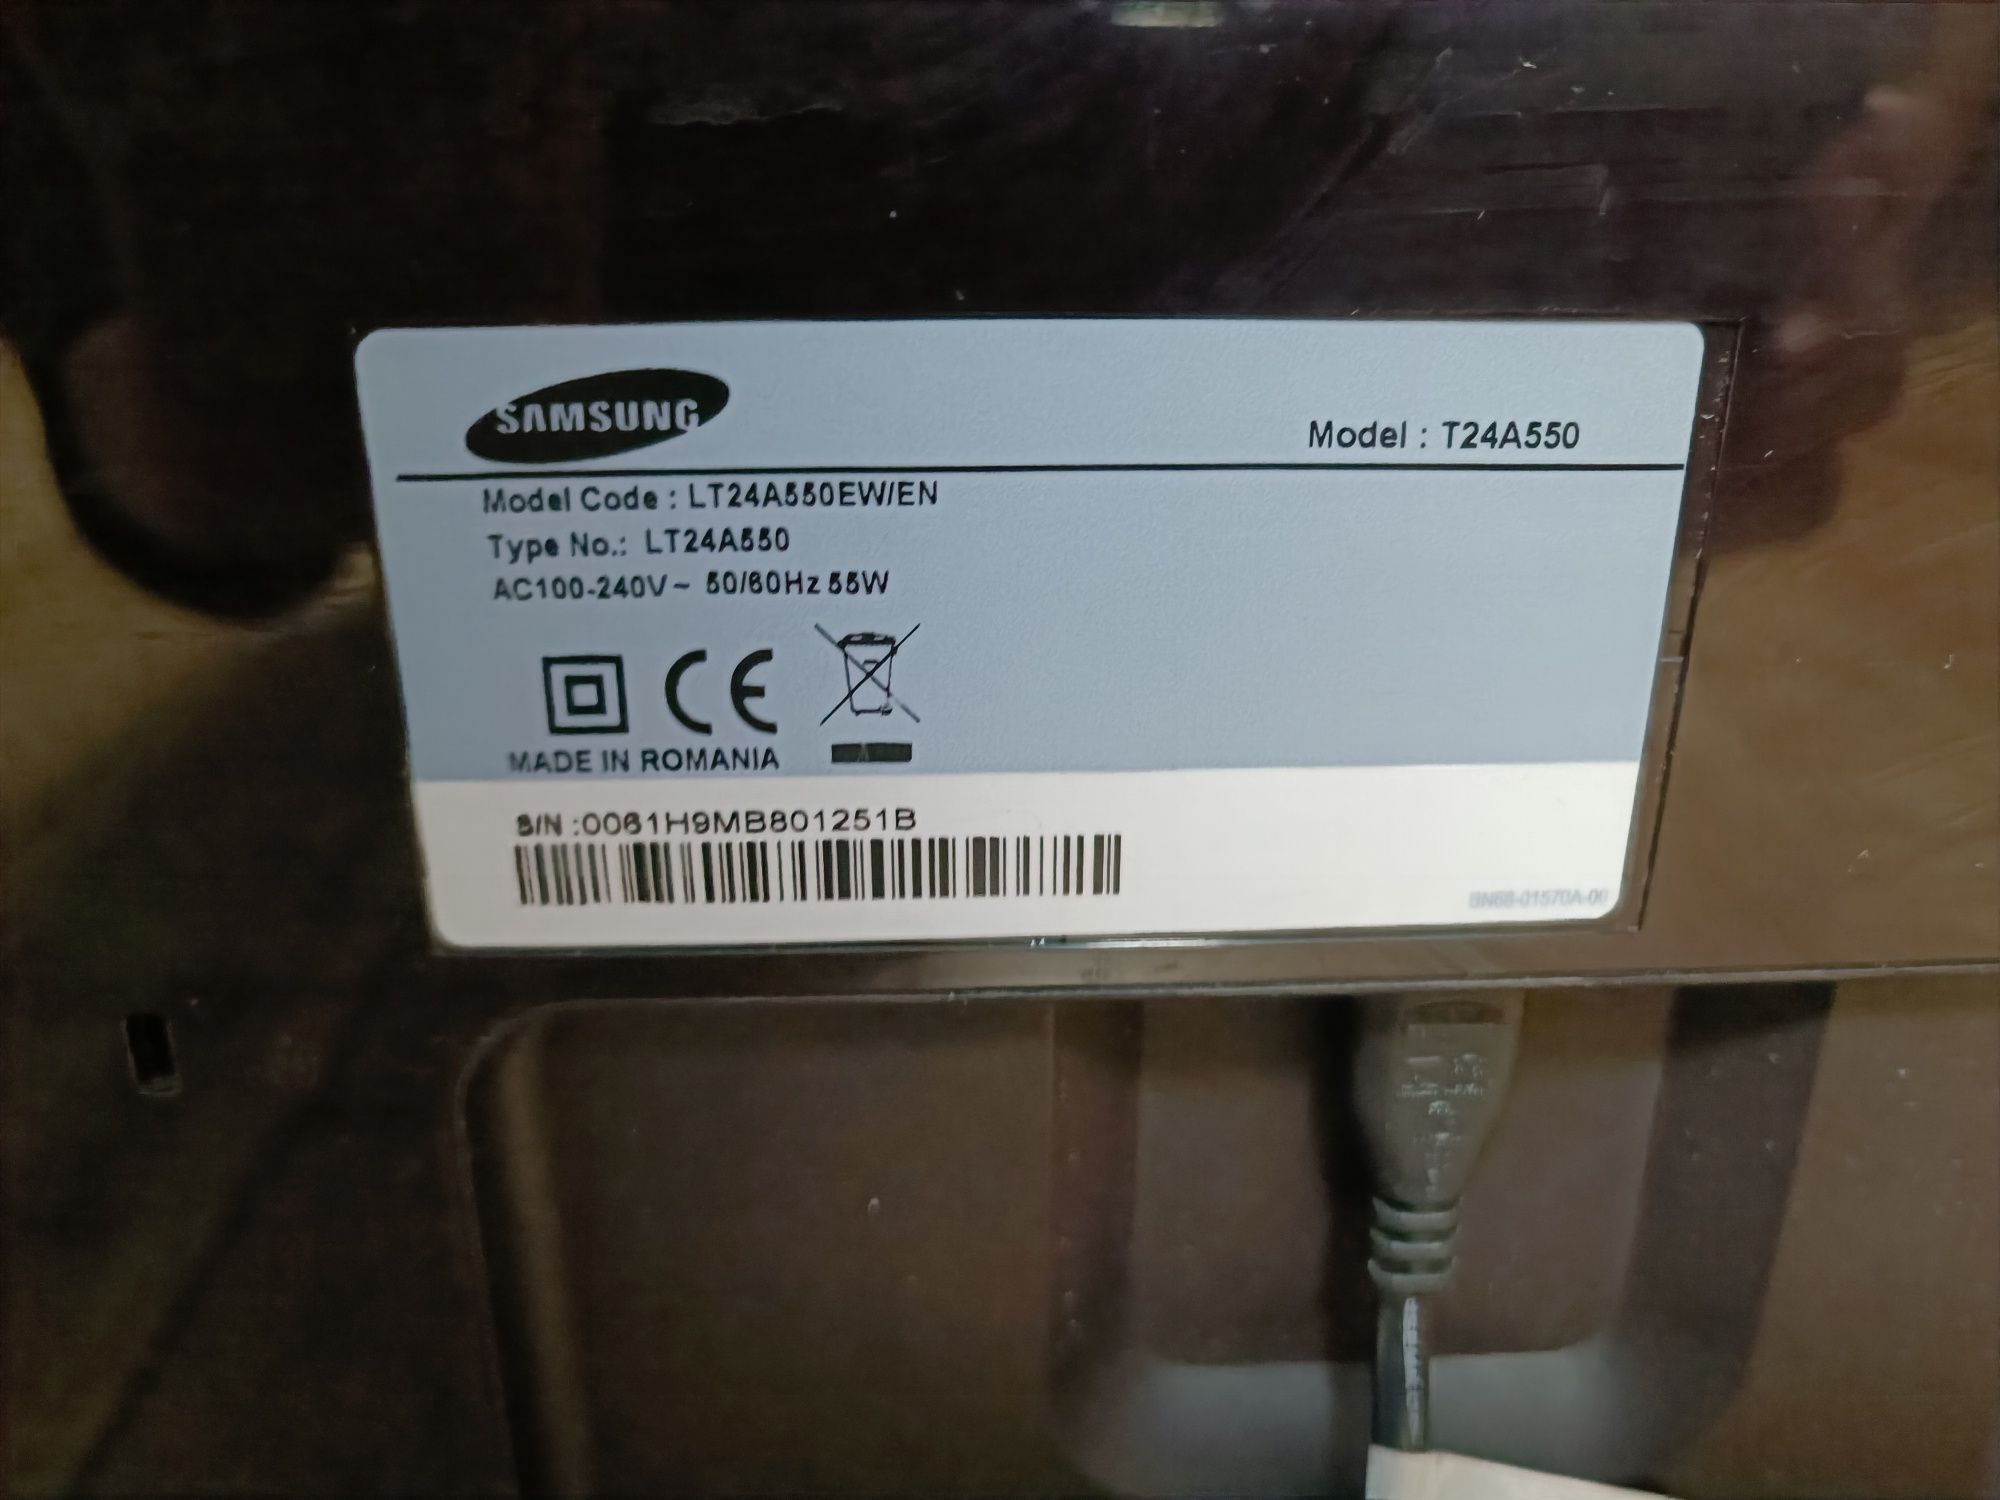 Monitor Samsung SyncMaster T24A550 (LT24A550EW/EN)